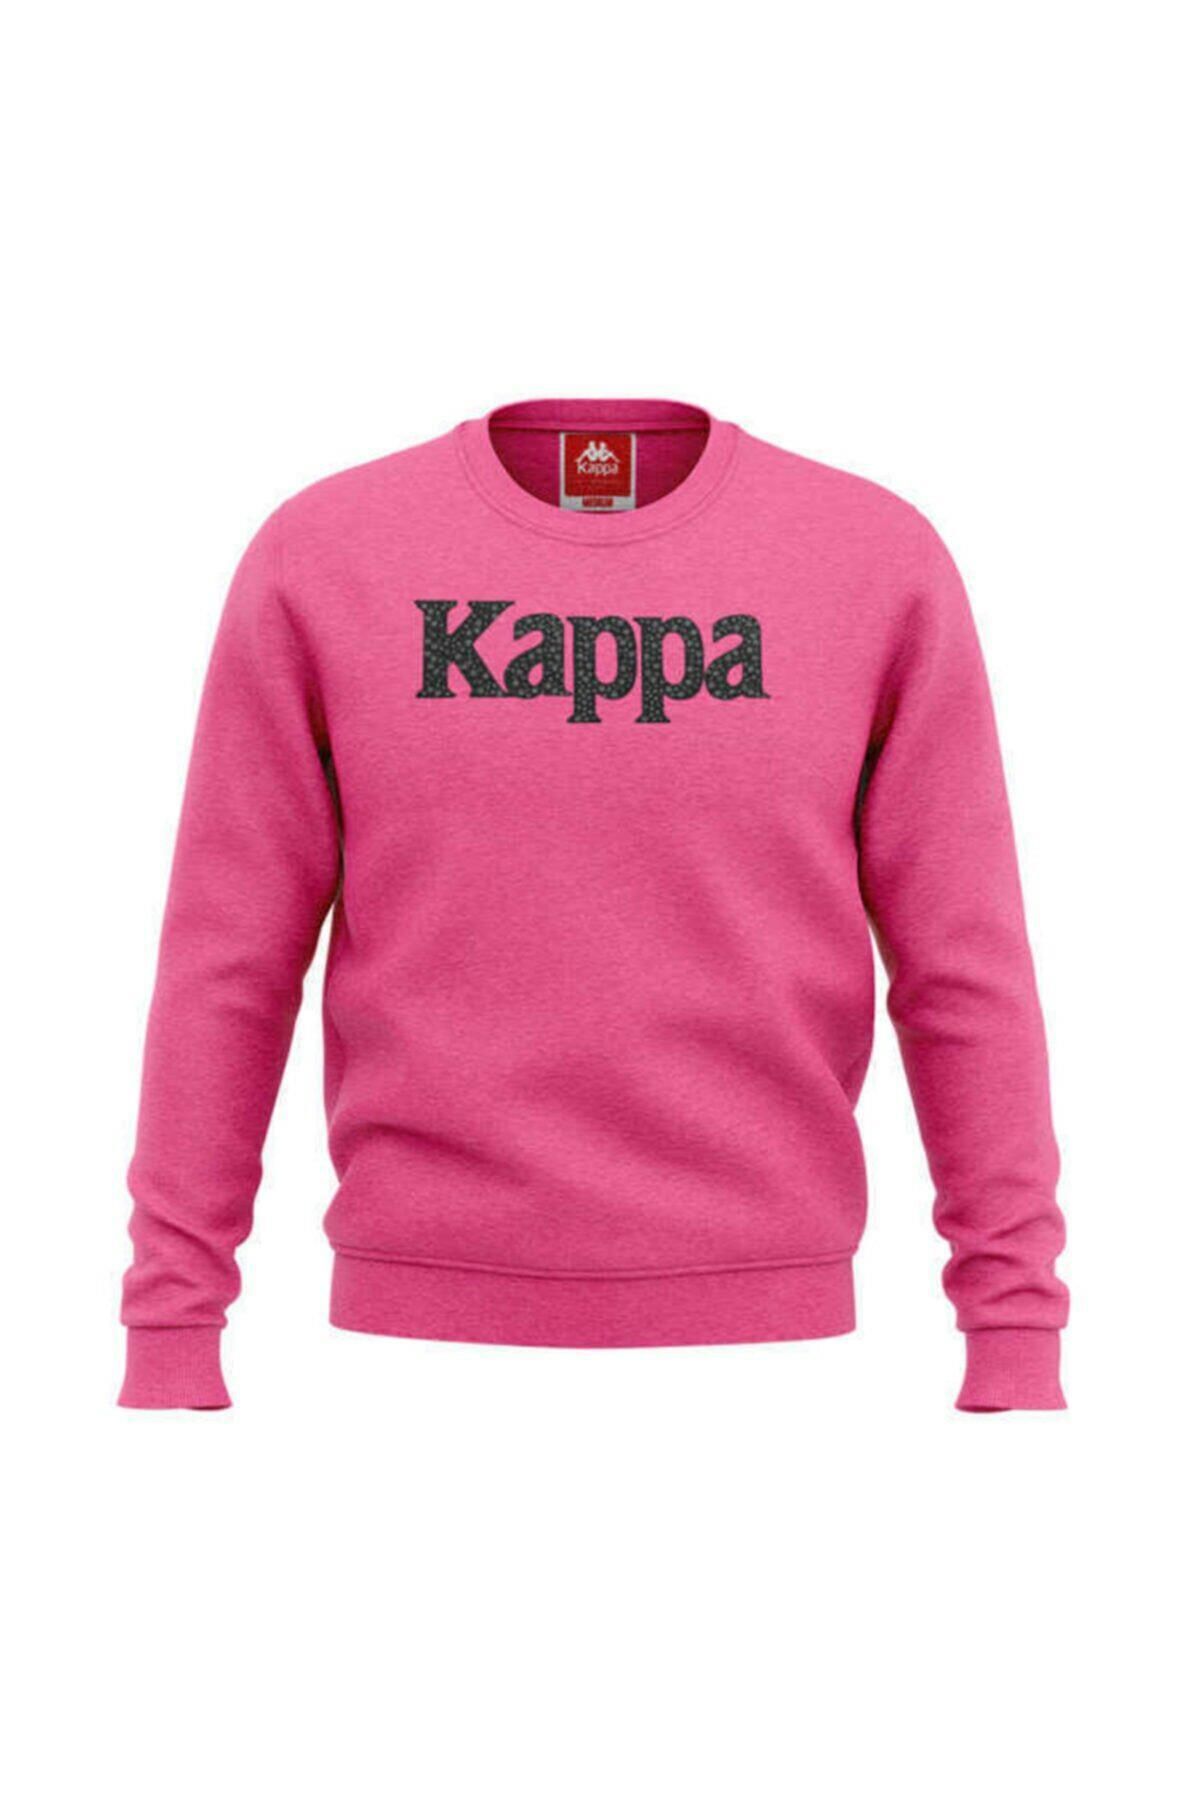 Kappa Kadın Sweatshirt Crytal 1 304s450